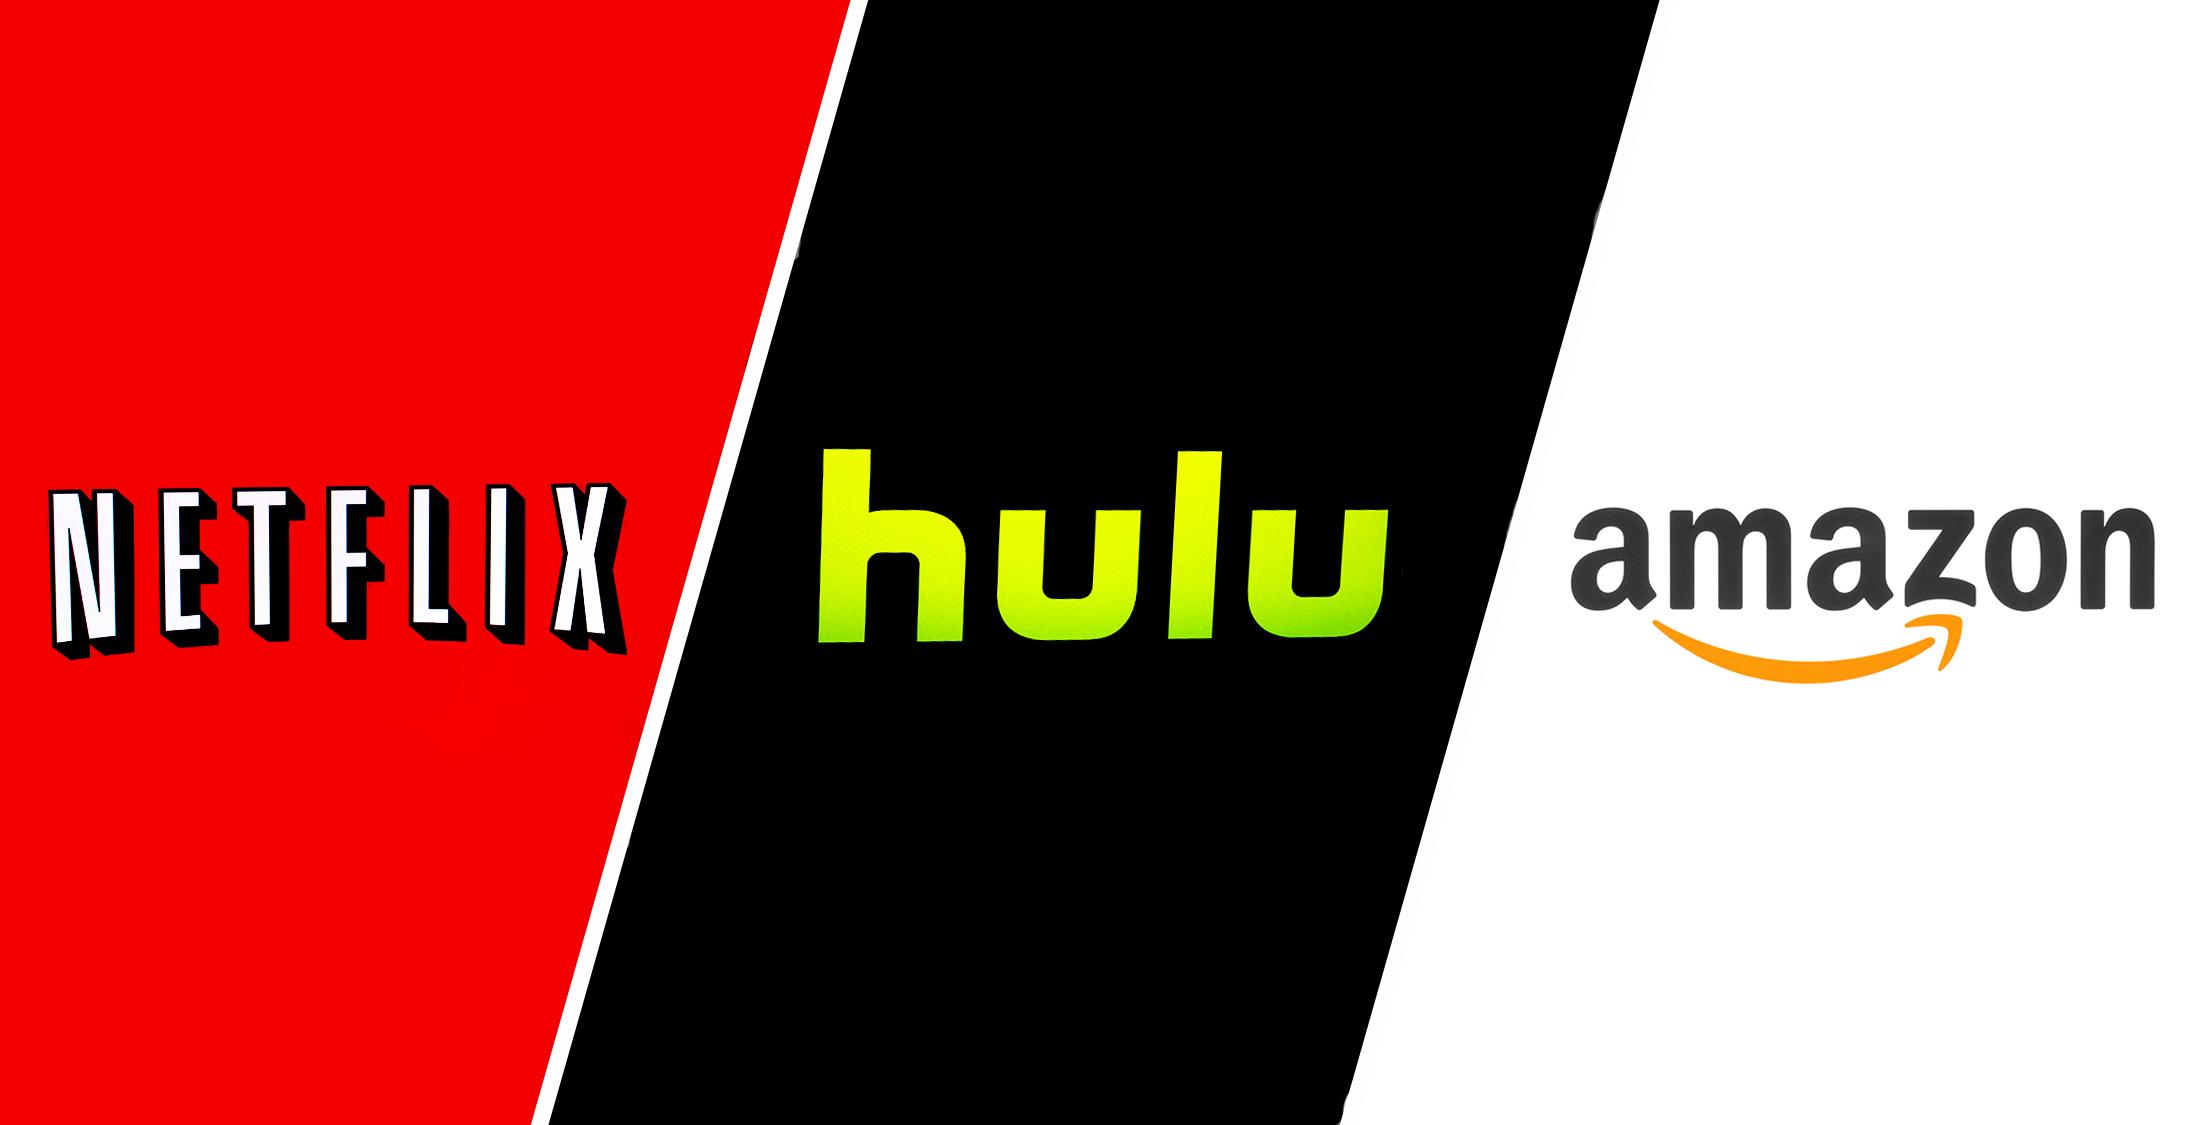 netflix hulu and amazon logos